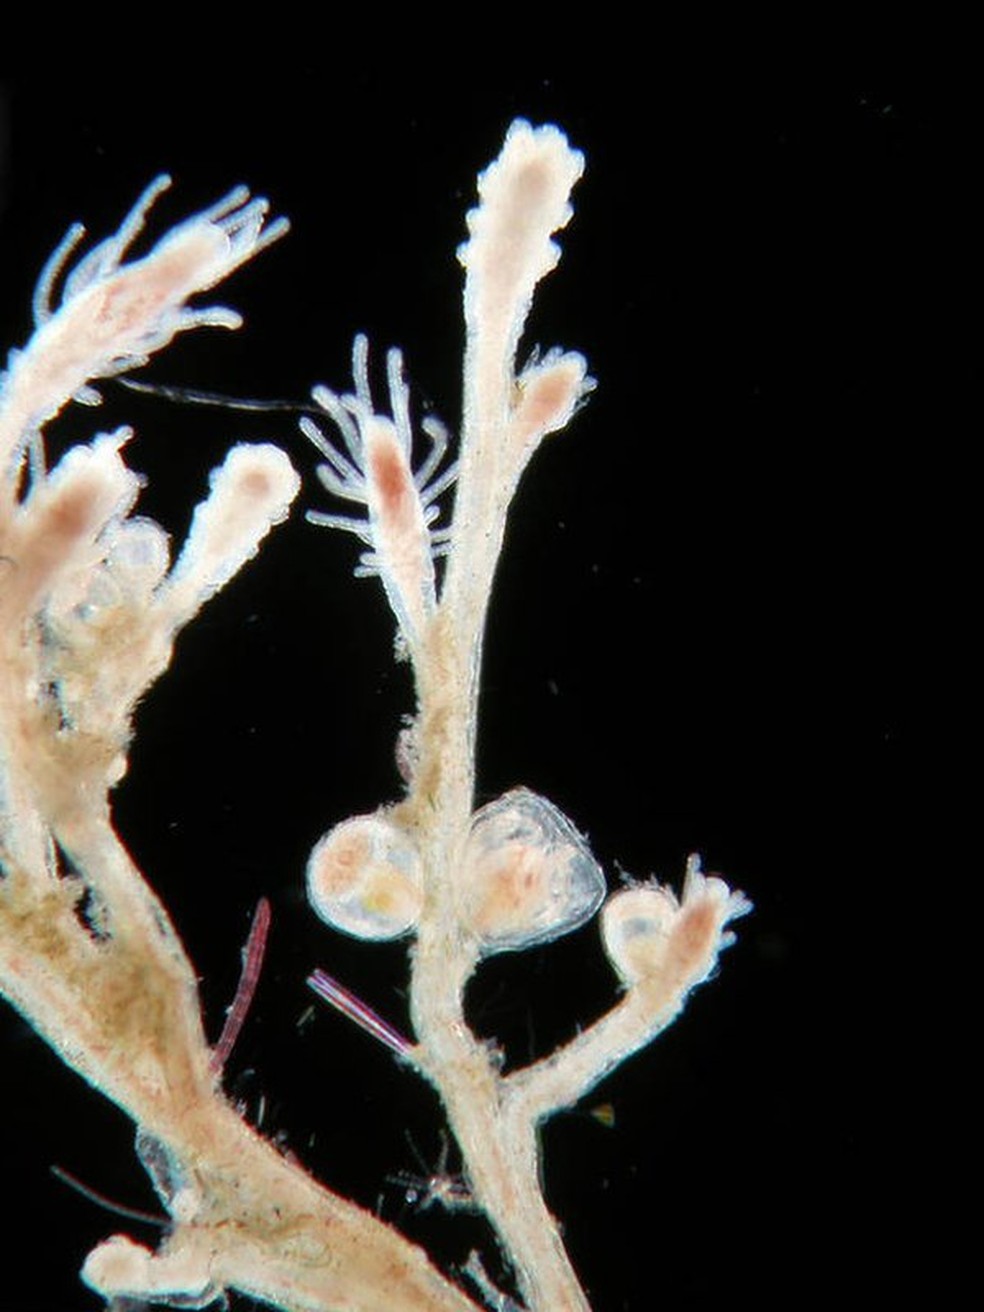  A água-viva tem a capacidade 'rejuvenescer', voltando a suas formas iniciais de vida  (Foto: Alvaro Migotto/Cebimar/USP )